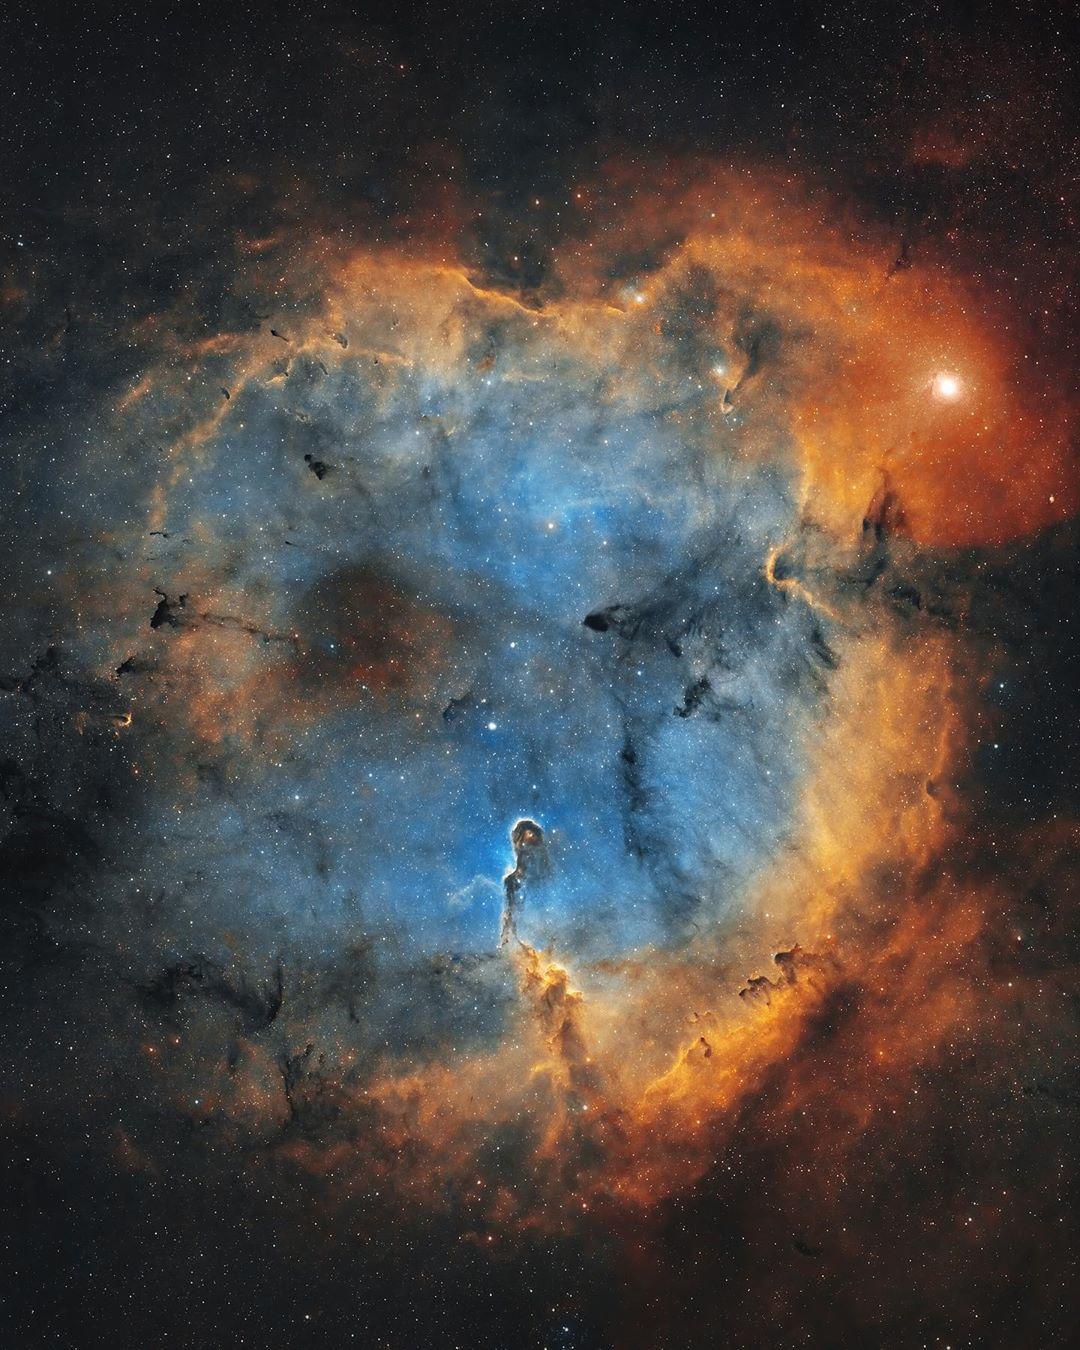  象鼻管星云是位于仙王座巨大的游离气体区域IC 1396内，距离地球约2400光年的星际物质高度集中区域，来自摄影师Bray Falls。 